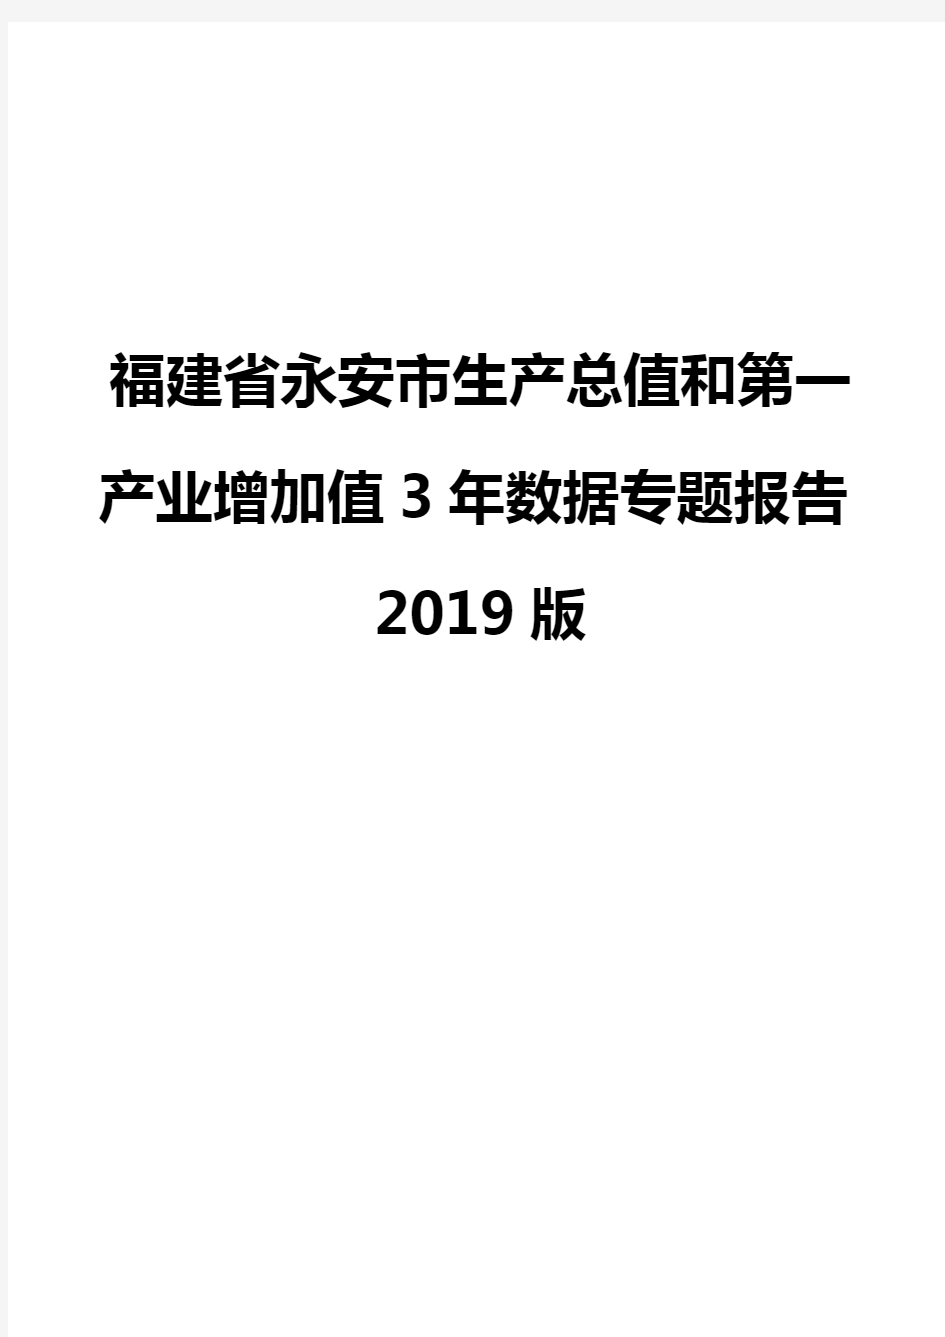 福建省永安市生产总值和第一产业增加值3年数据专题报告2019版